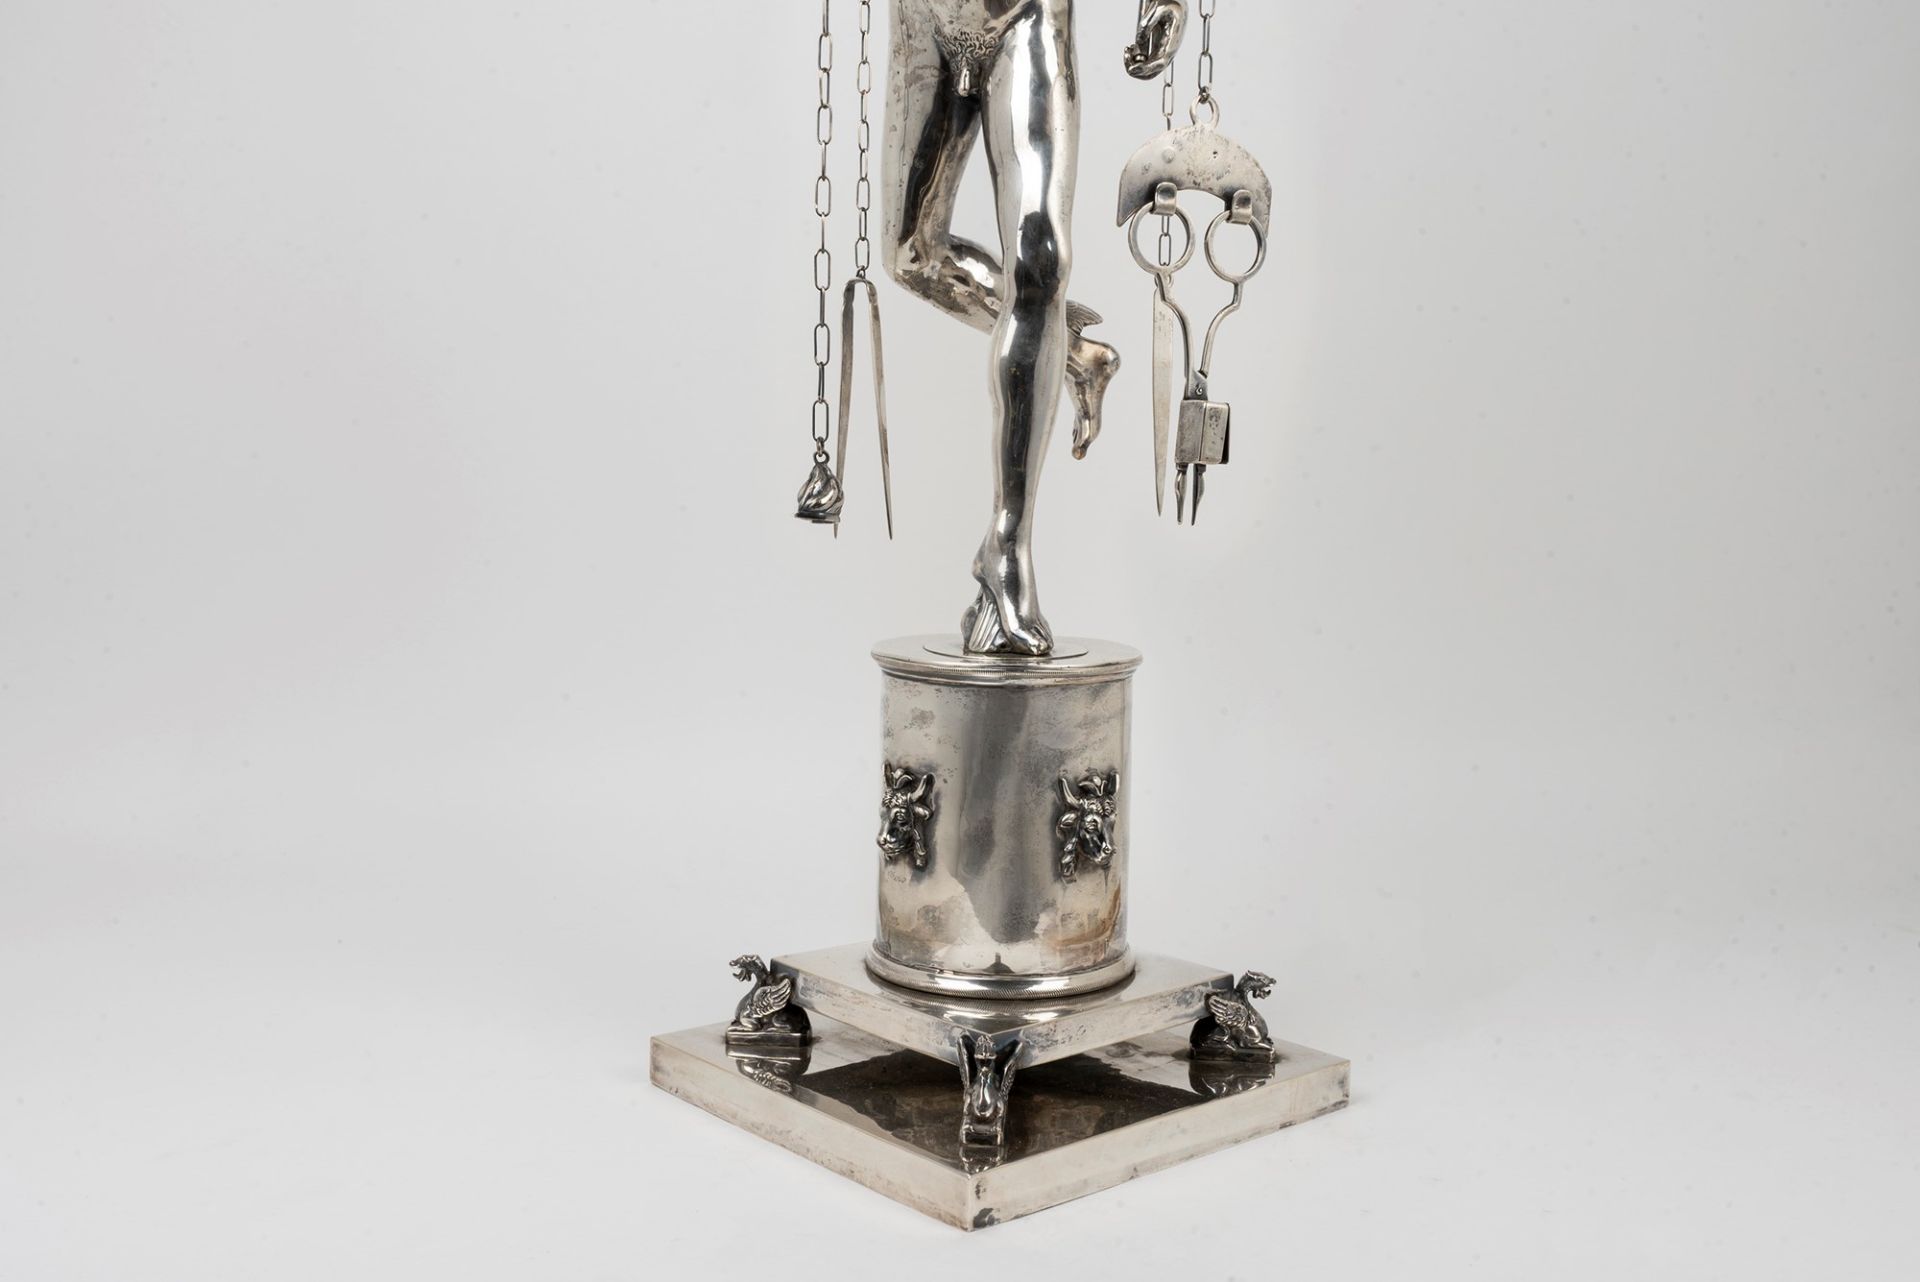 Roman silver oil lamp representing Mercury, by Giambologna, 20th century - Image 5 of 6